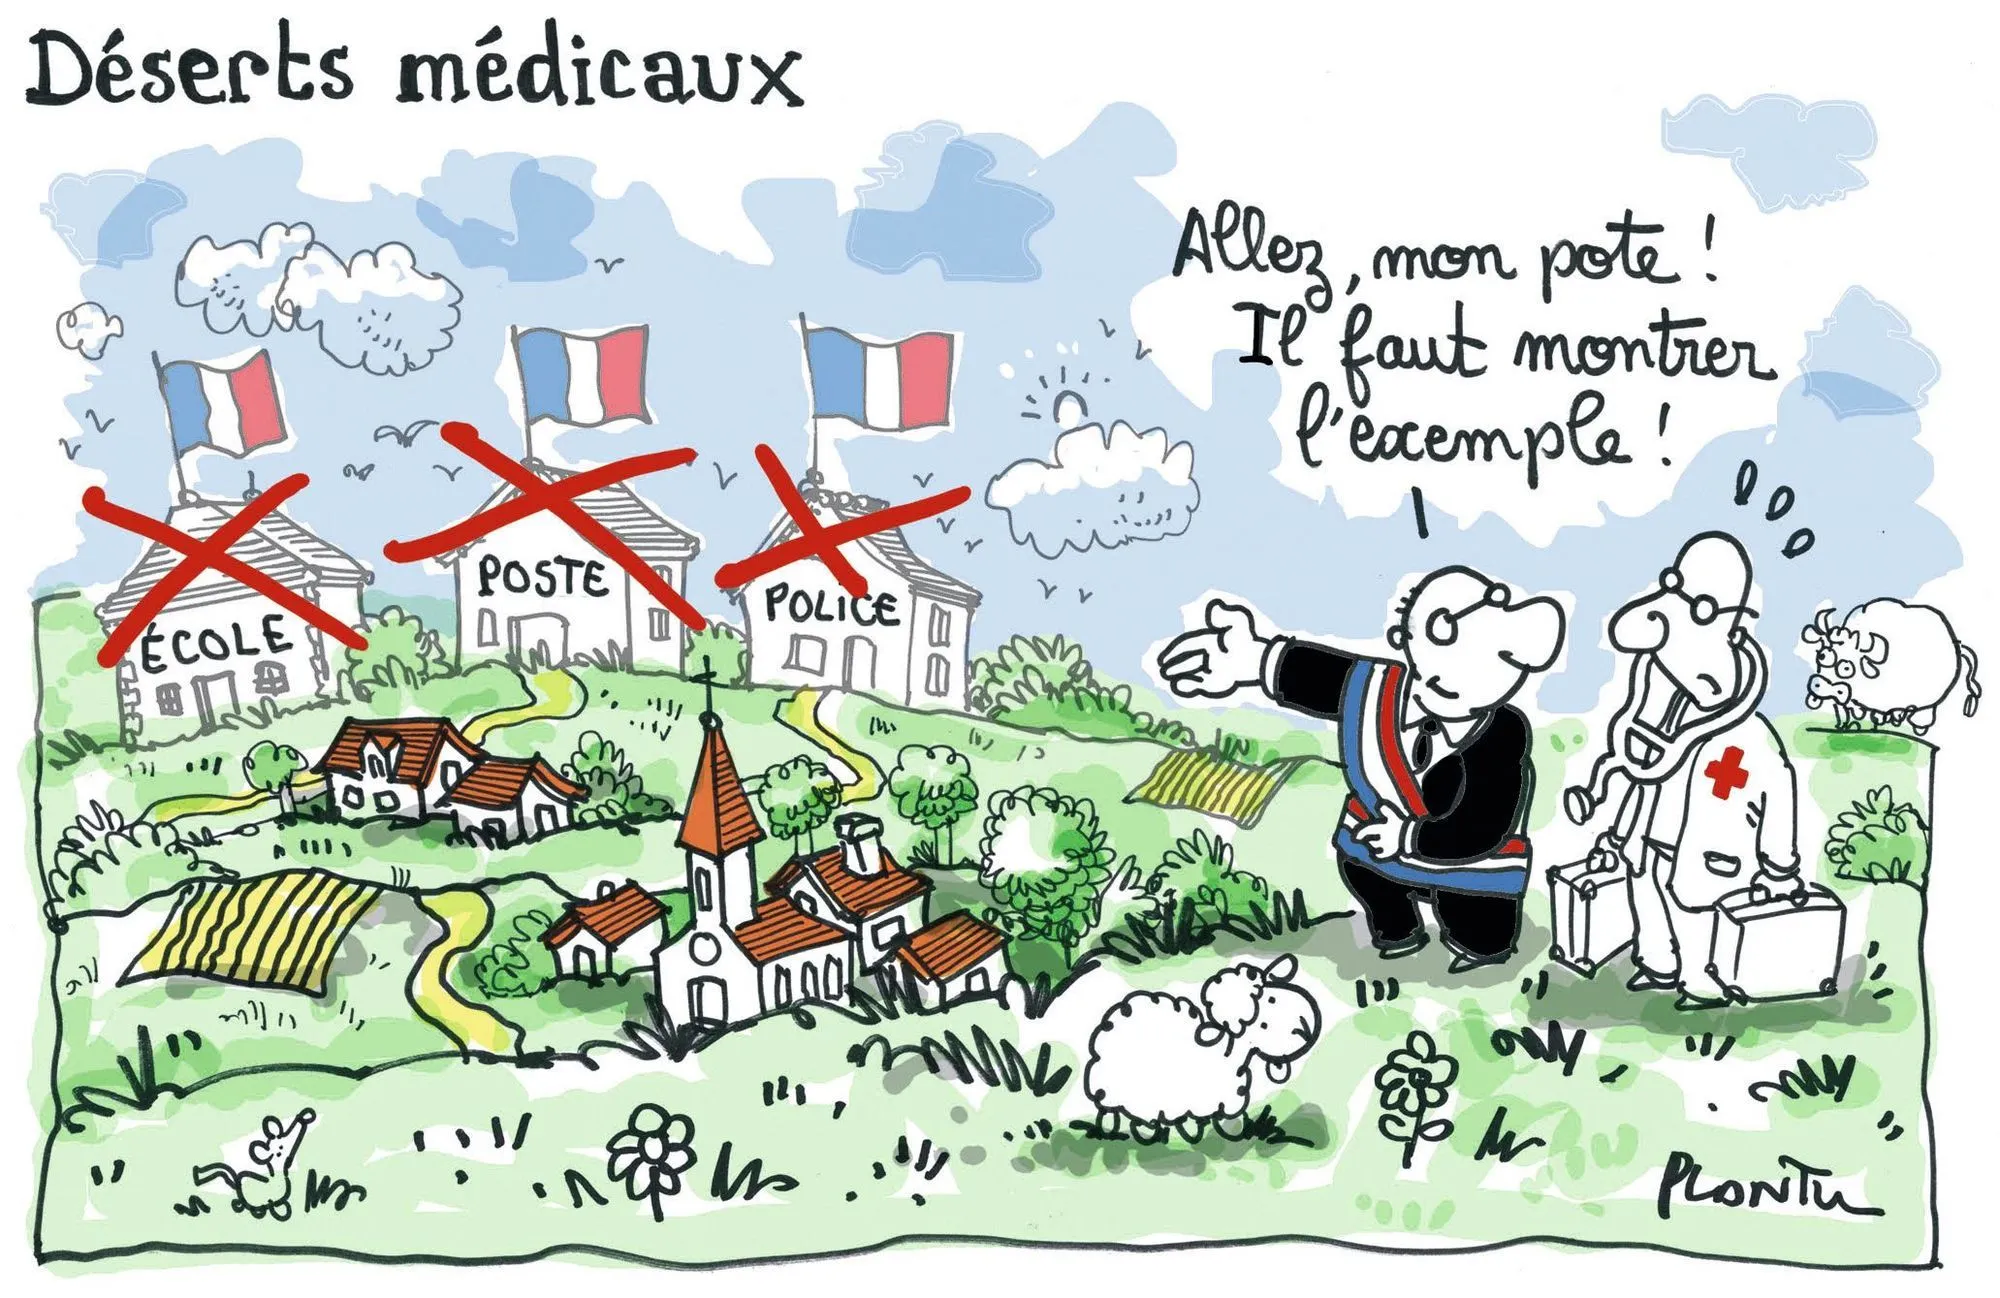 Les déserts médicaux en France - Plantu, Le Monde, 2013